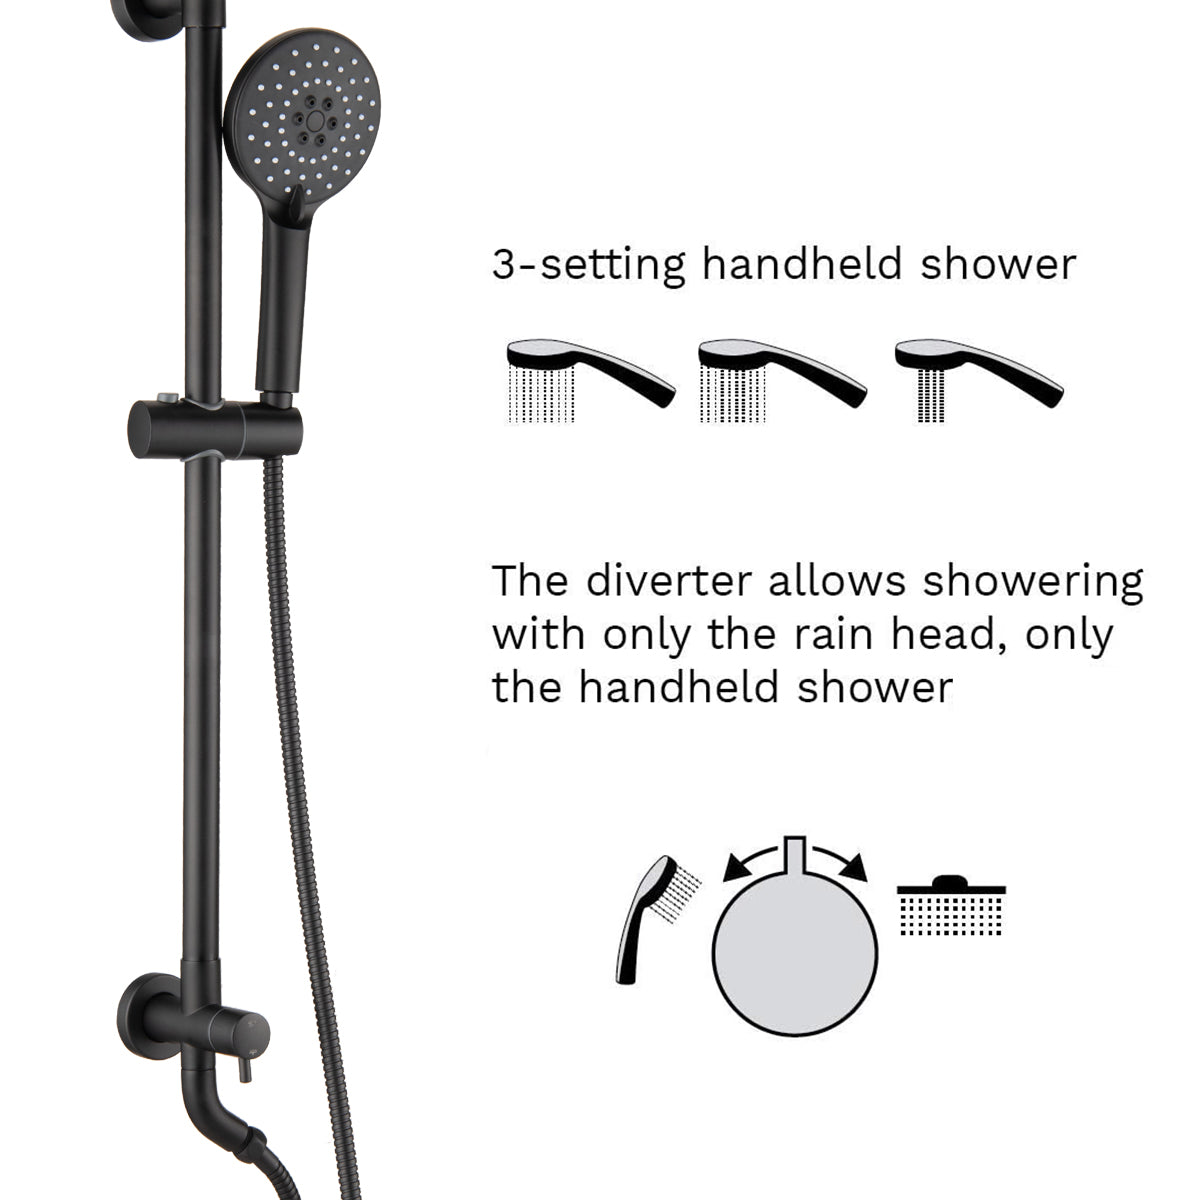 3-setting handheld shower